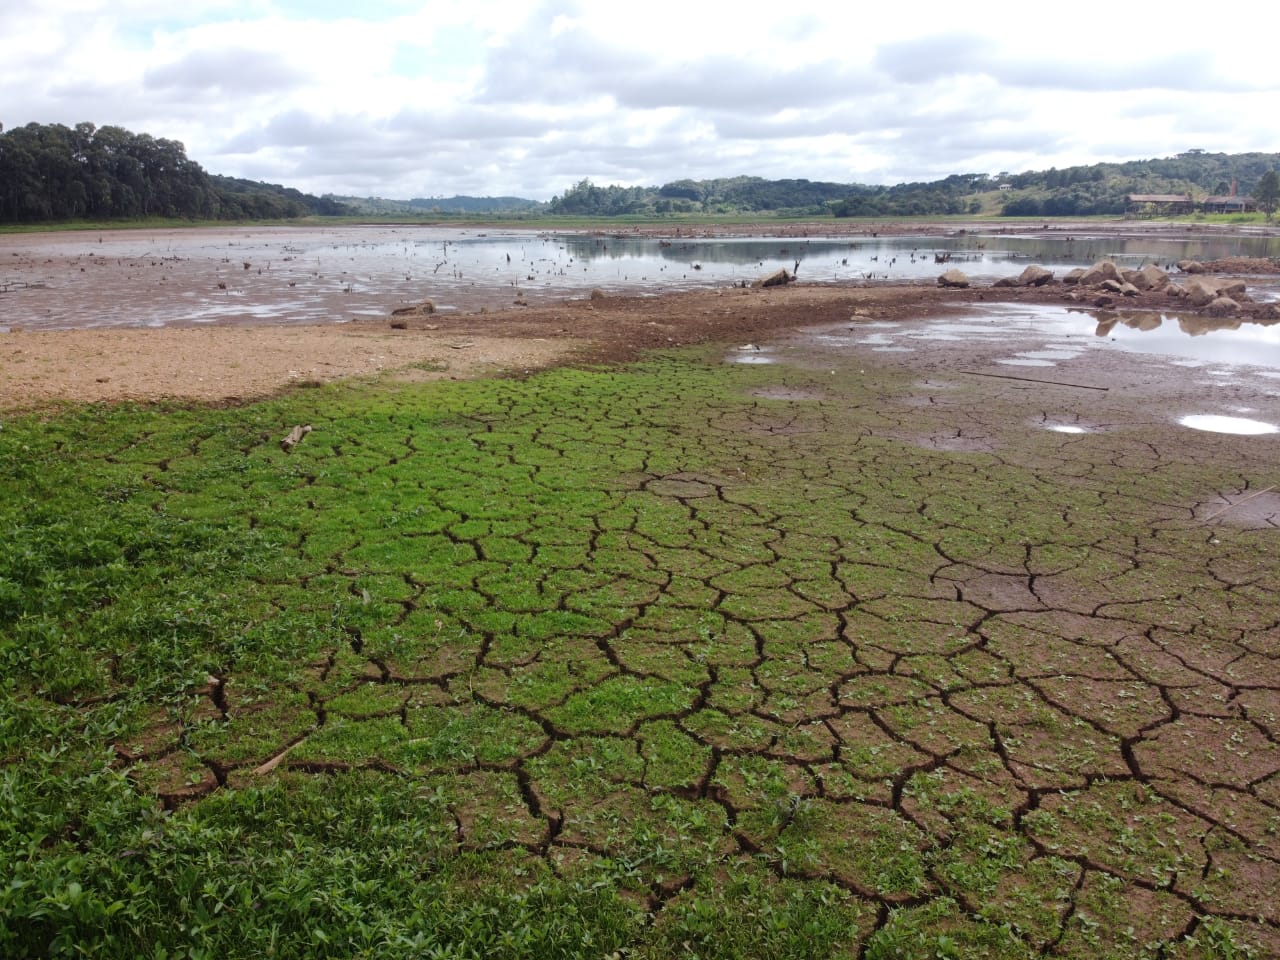 Desmatamento agrava crise hídrica no país